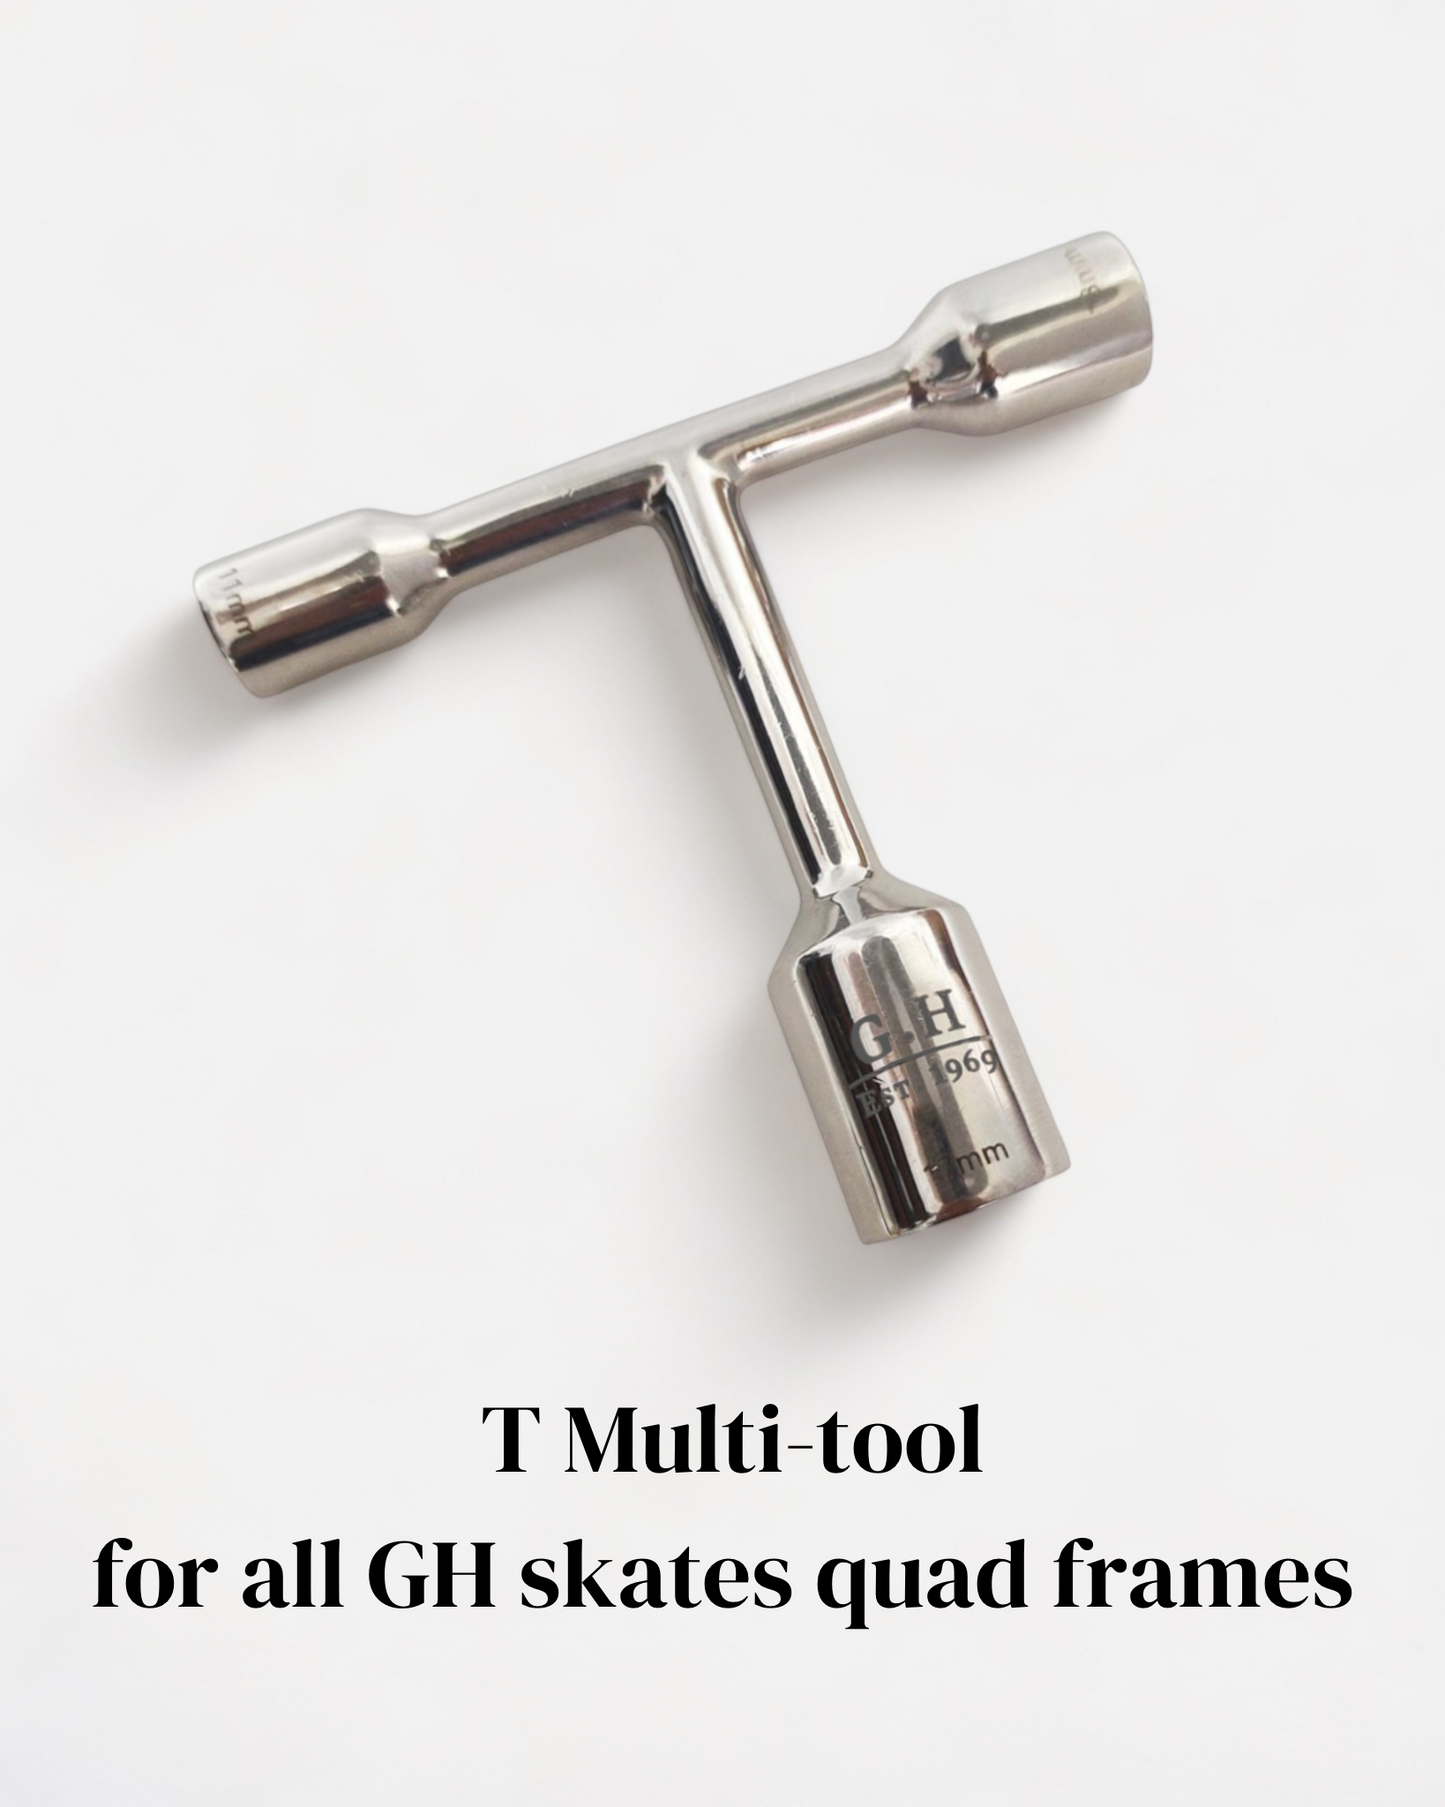 Tools for GH skate frames